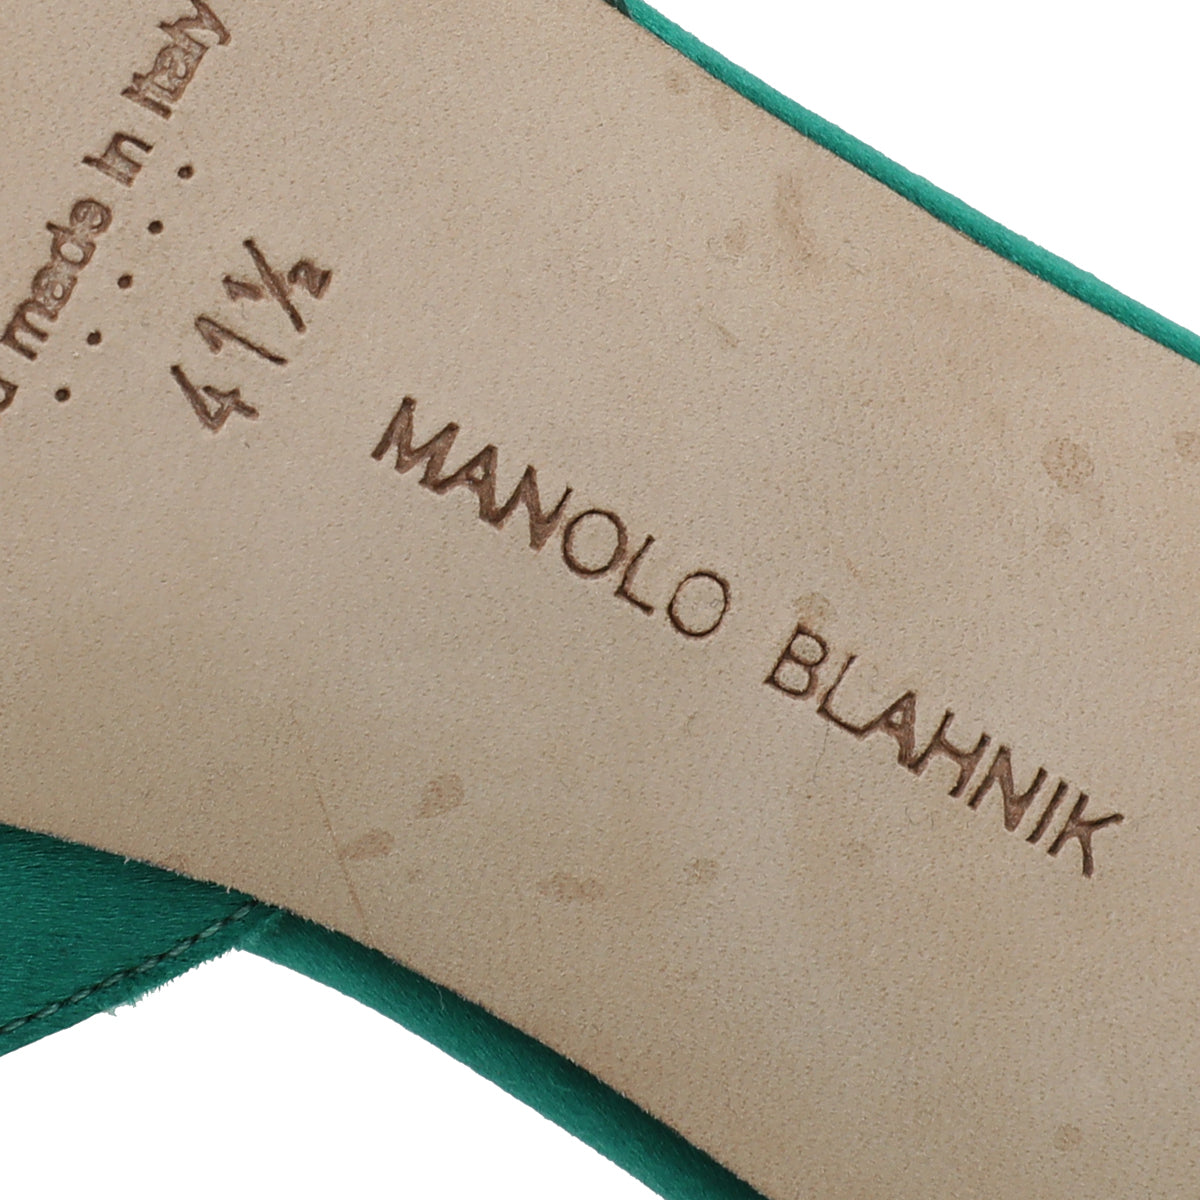 Manolo Blahnik Green Satin Hangisi Mules 41.5